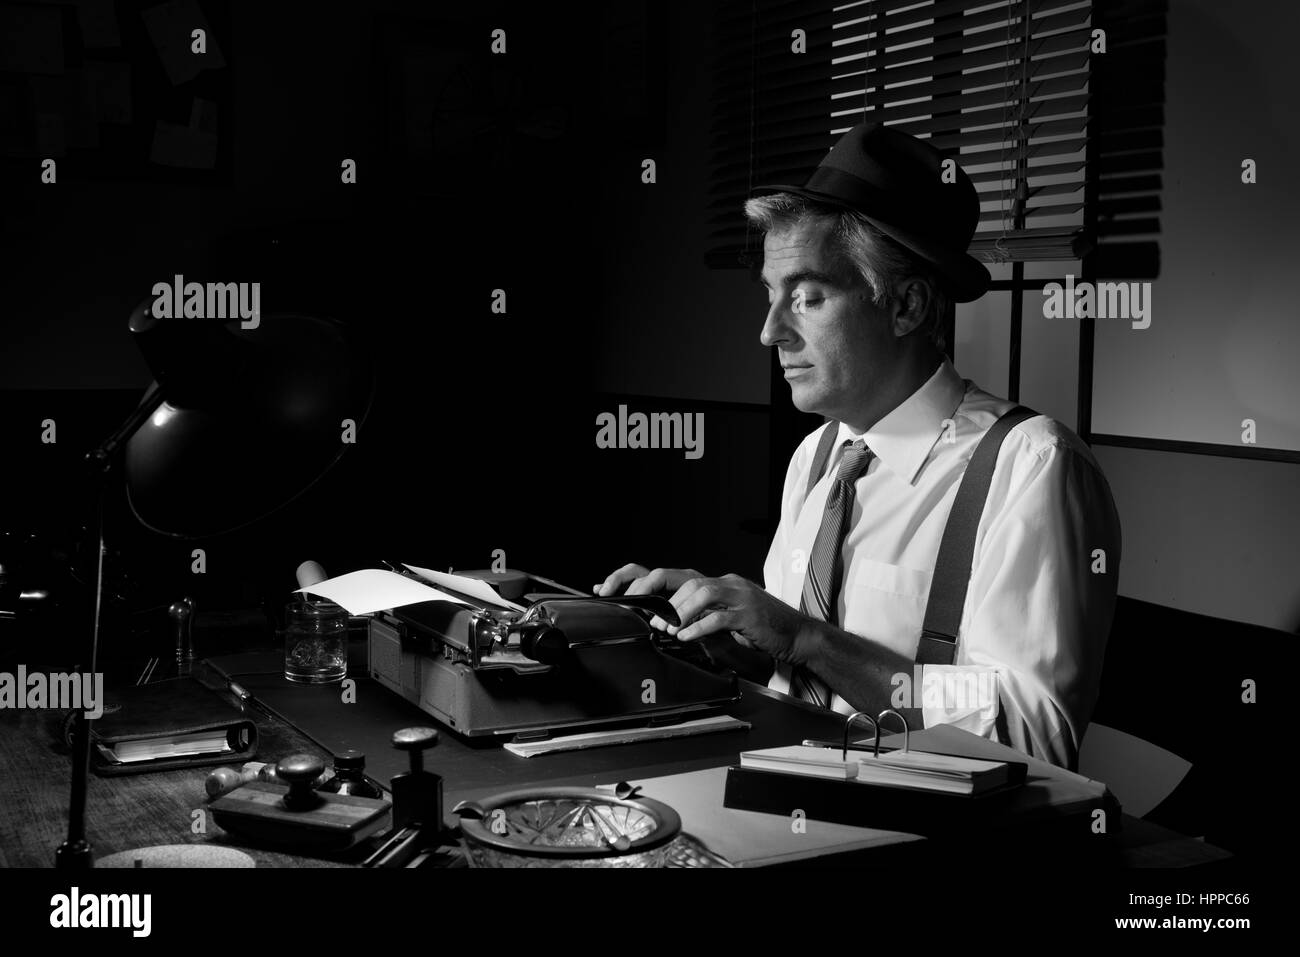 Professionelle schöne Reporter arbeiten am Schreibtisch, 1950er-Jahre Stil. Stockfoto